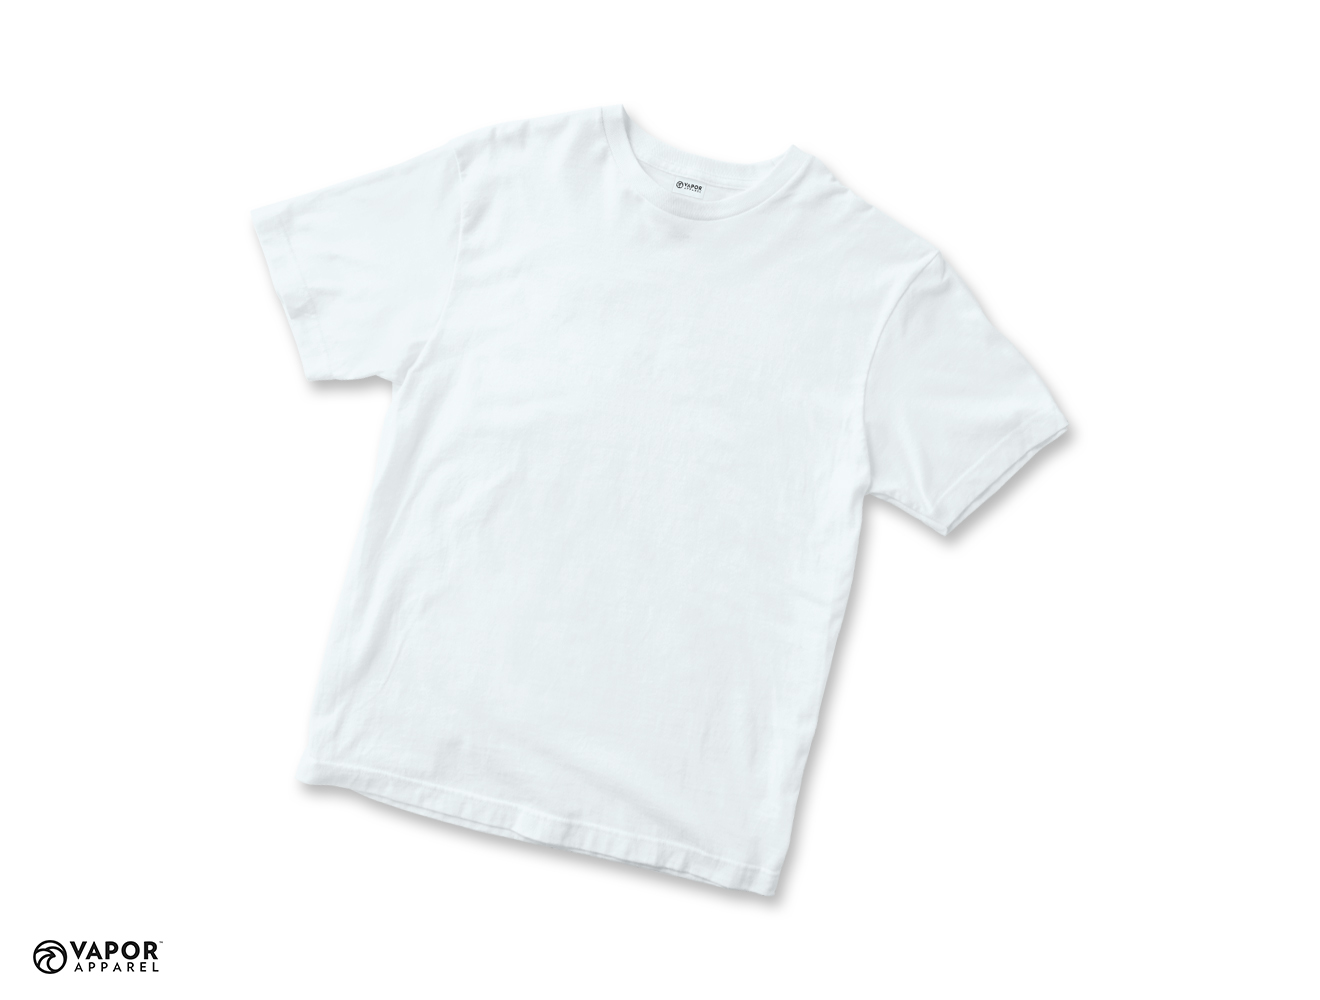 Vapor Sublimation T-Shirt for Adults size L - White